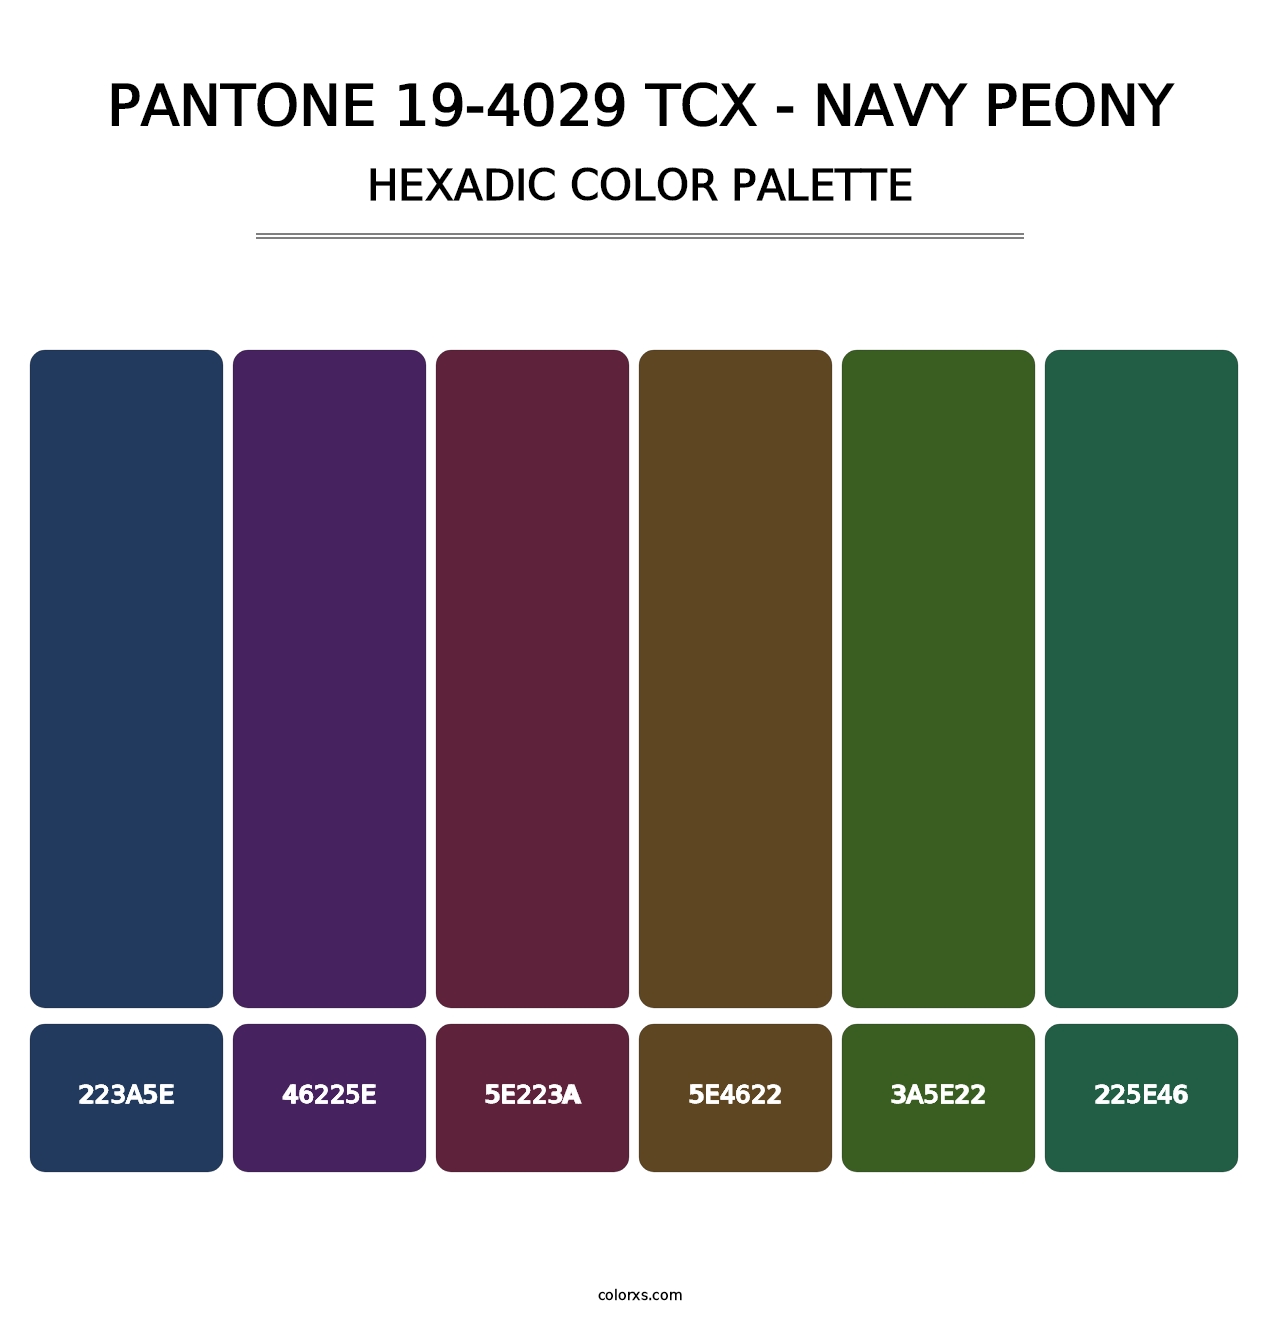 PANTONE 19-4029 TCX - Navy Peony - Hexadic Color Palette